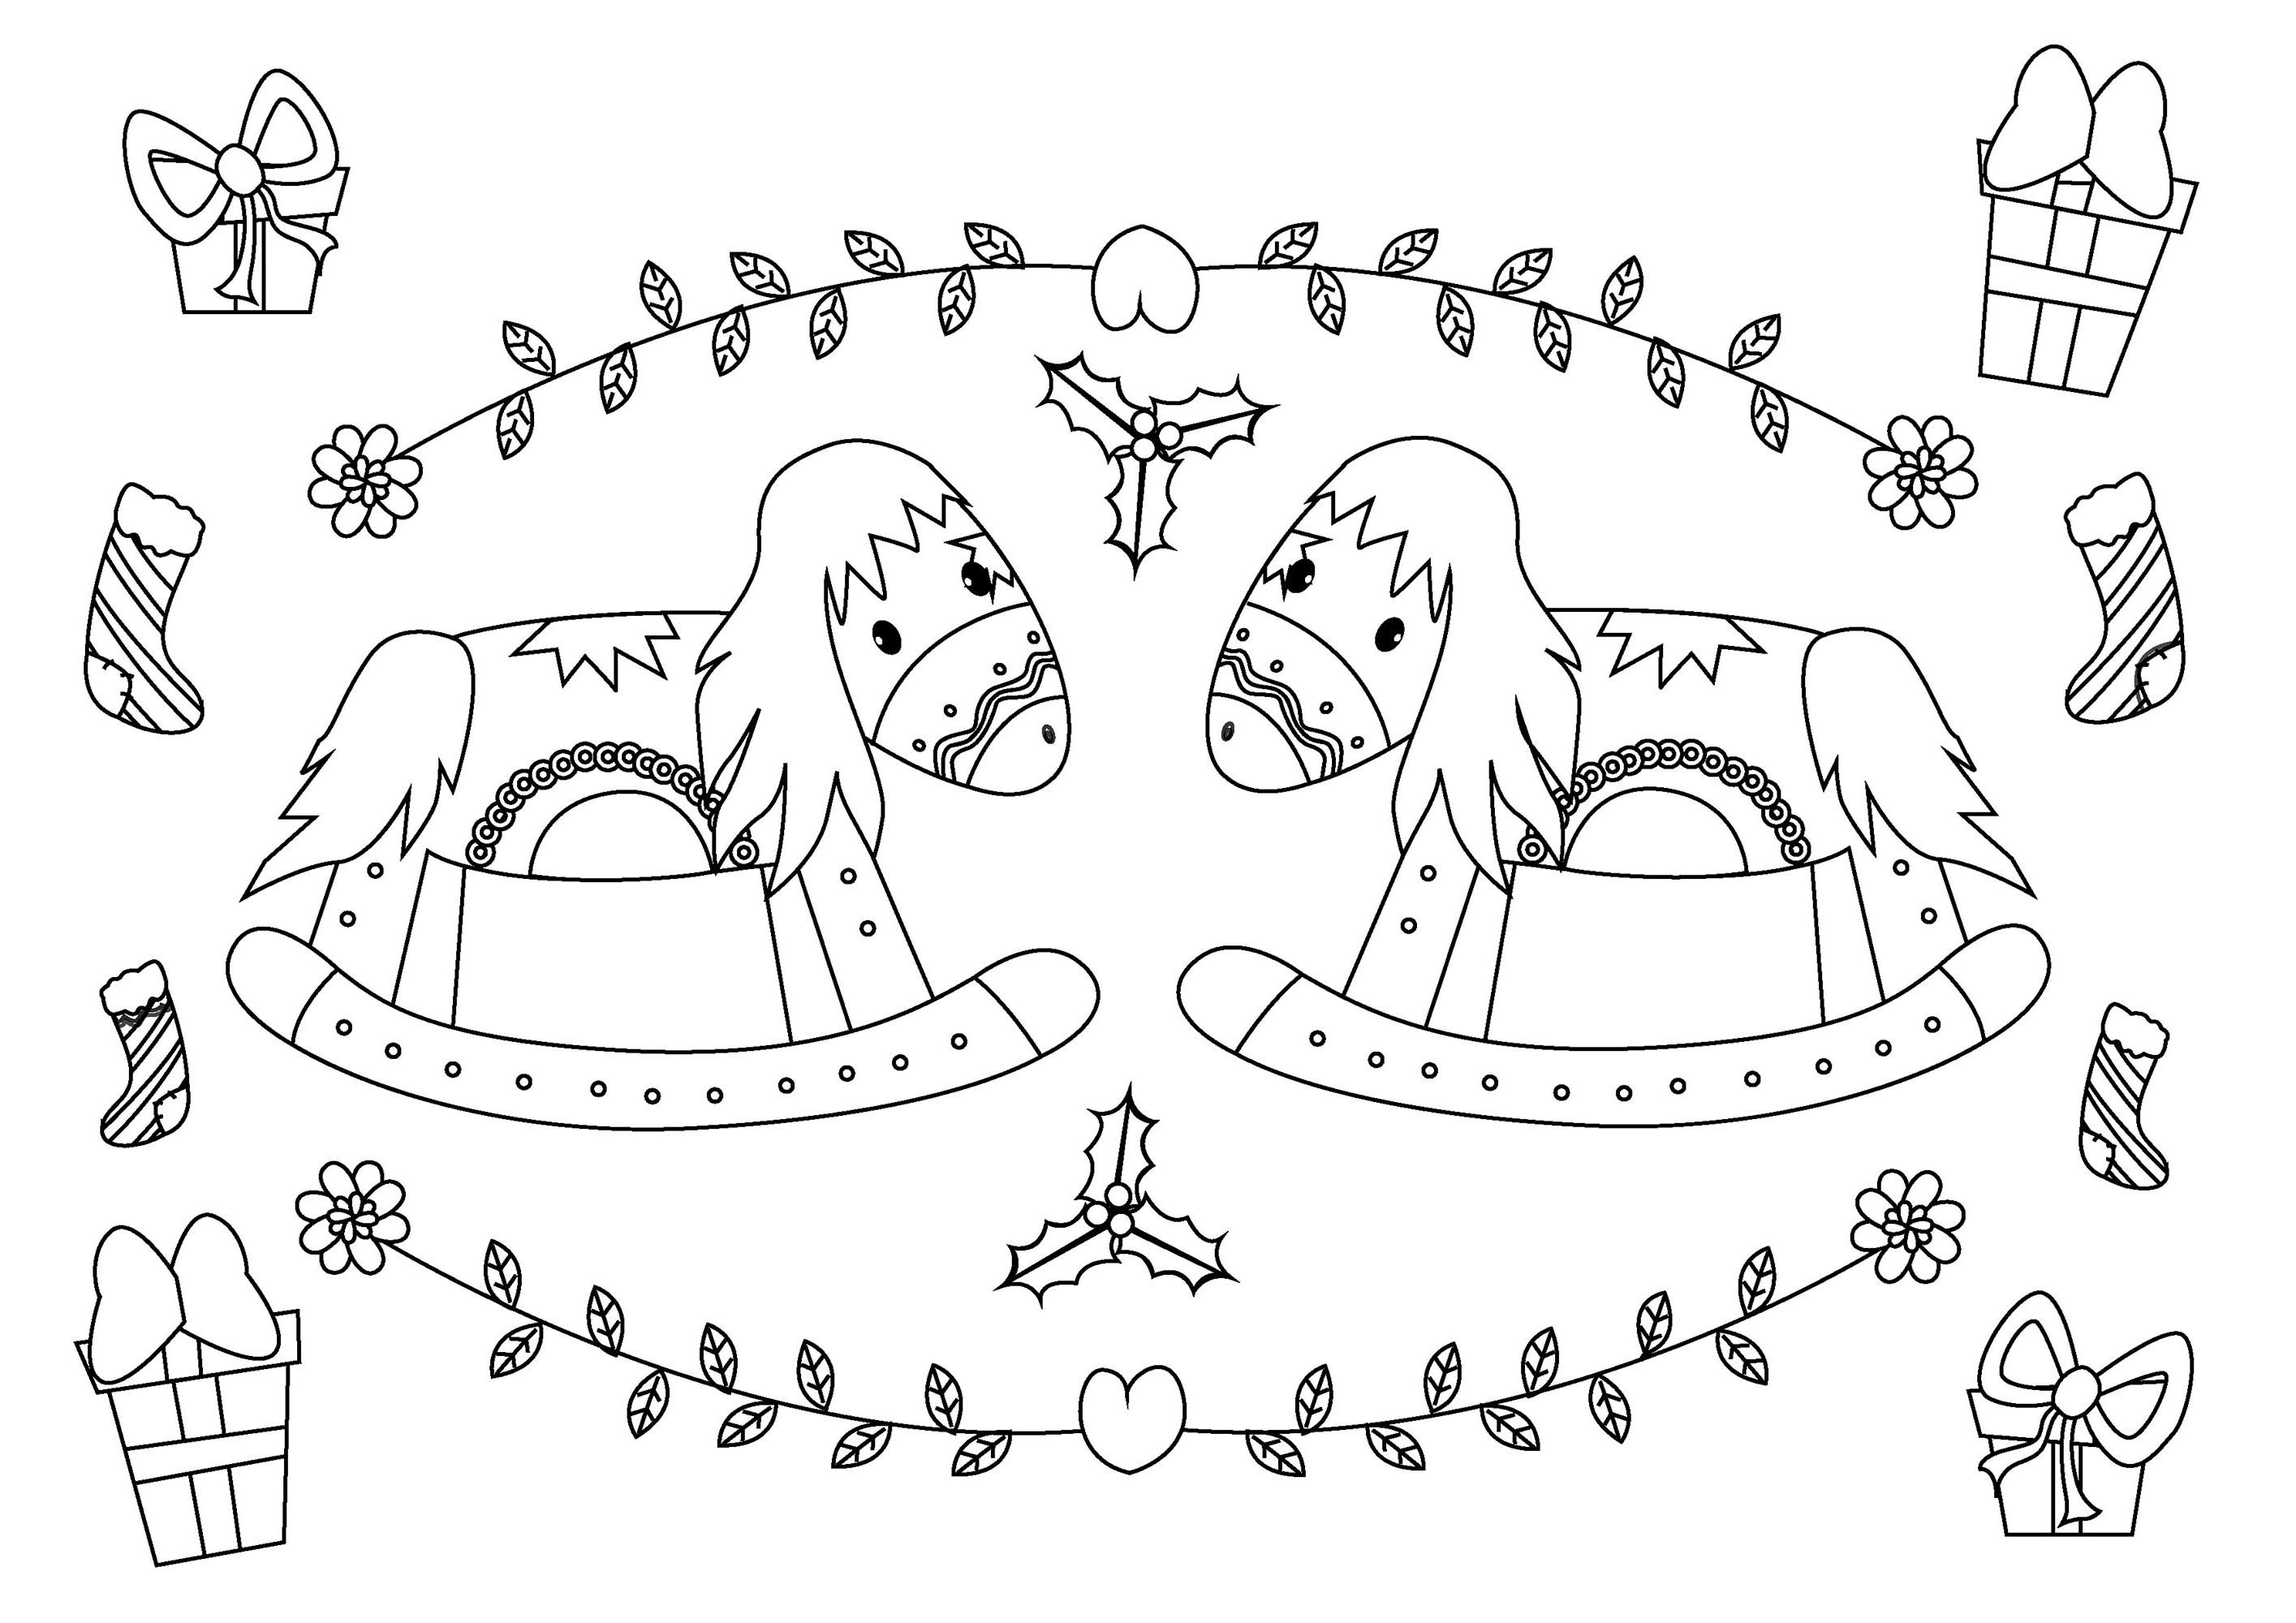 Un coloriage simple pour Noël, avec de nombreux symboles de cette période unique